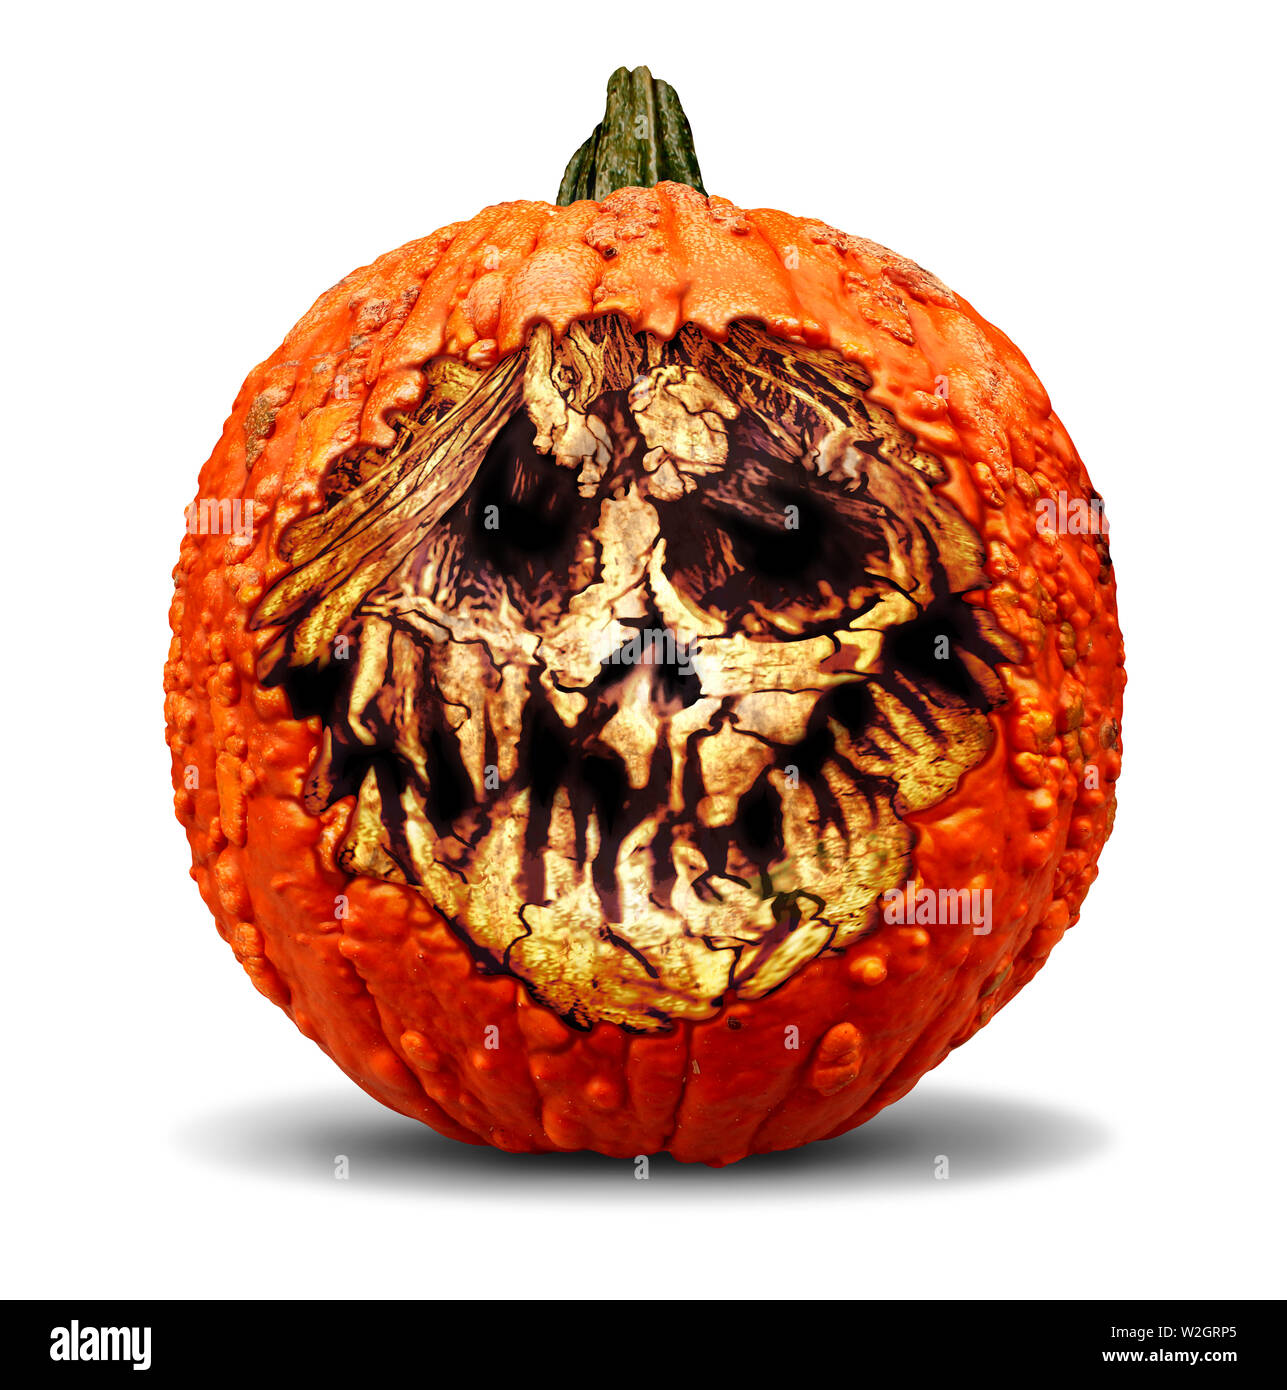 Gruselige halloween jack o lantern Kürbis mit einem geschnitzten Böse  furchtsamen Ausdruck von Tod und Schrecken in einer 3D-Darstellung  Stockfotografie - Alamy